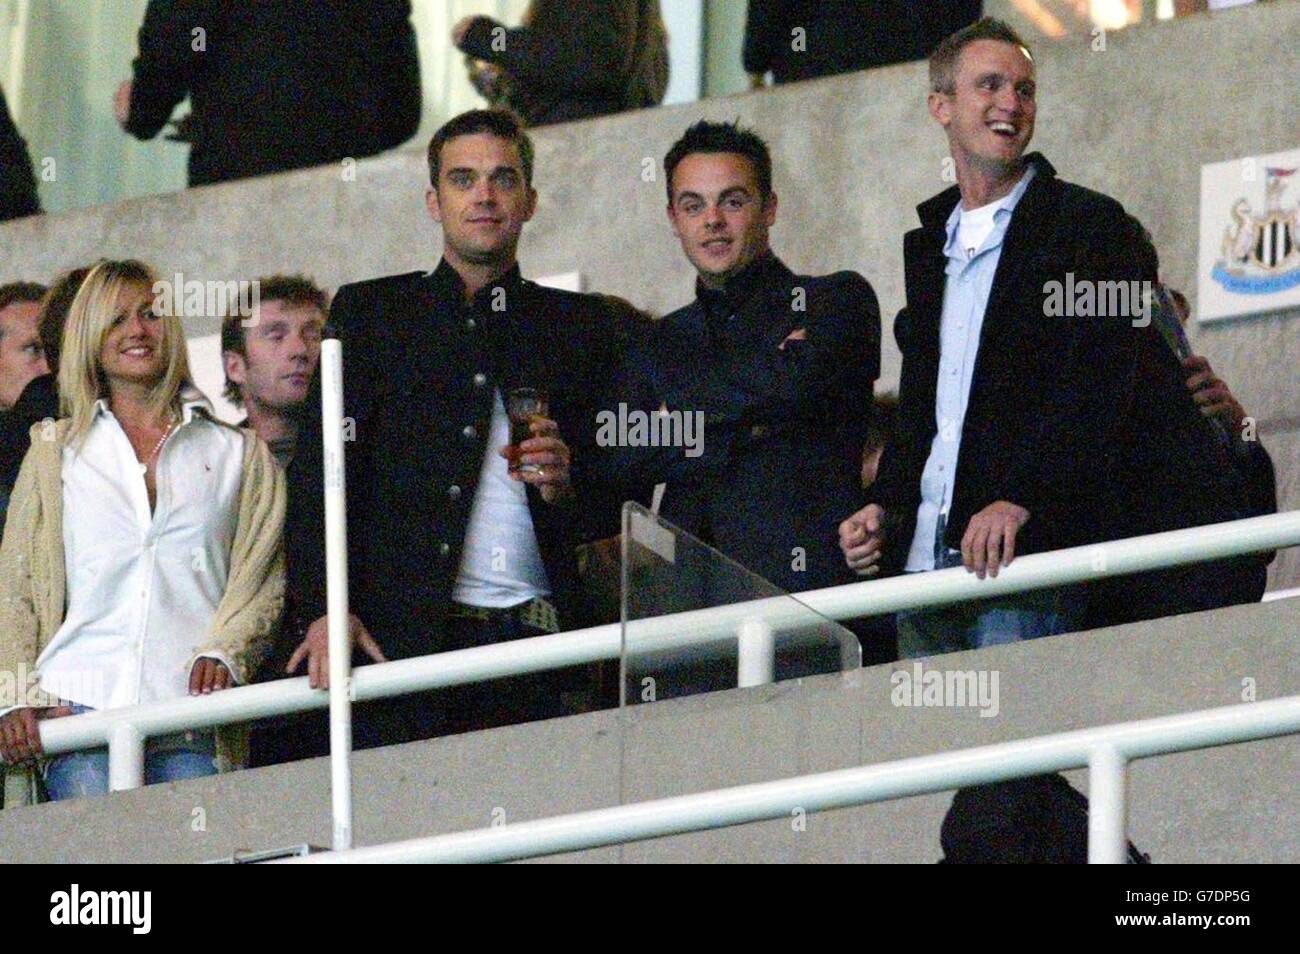 Robbie Williams (al centro) e ANT McPartlin (al centro di destra) guardano la finale dal vivo "The Match" di Sky One che si gioca al St James Park, Newcastle upon Tyne. Robbie era lì per sostenere il suo amico Jonathan Wilkes. Foto Stock